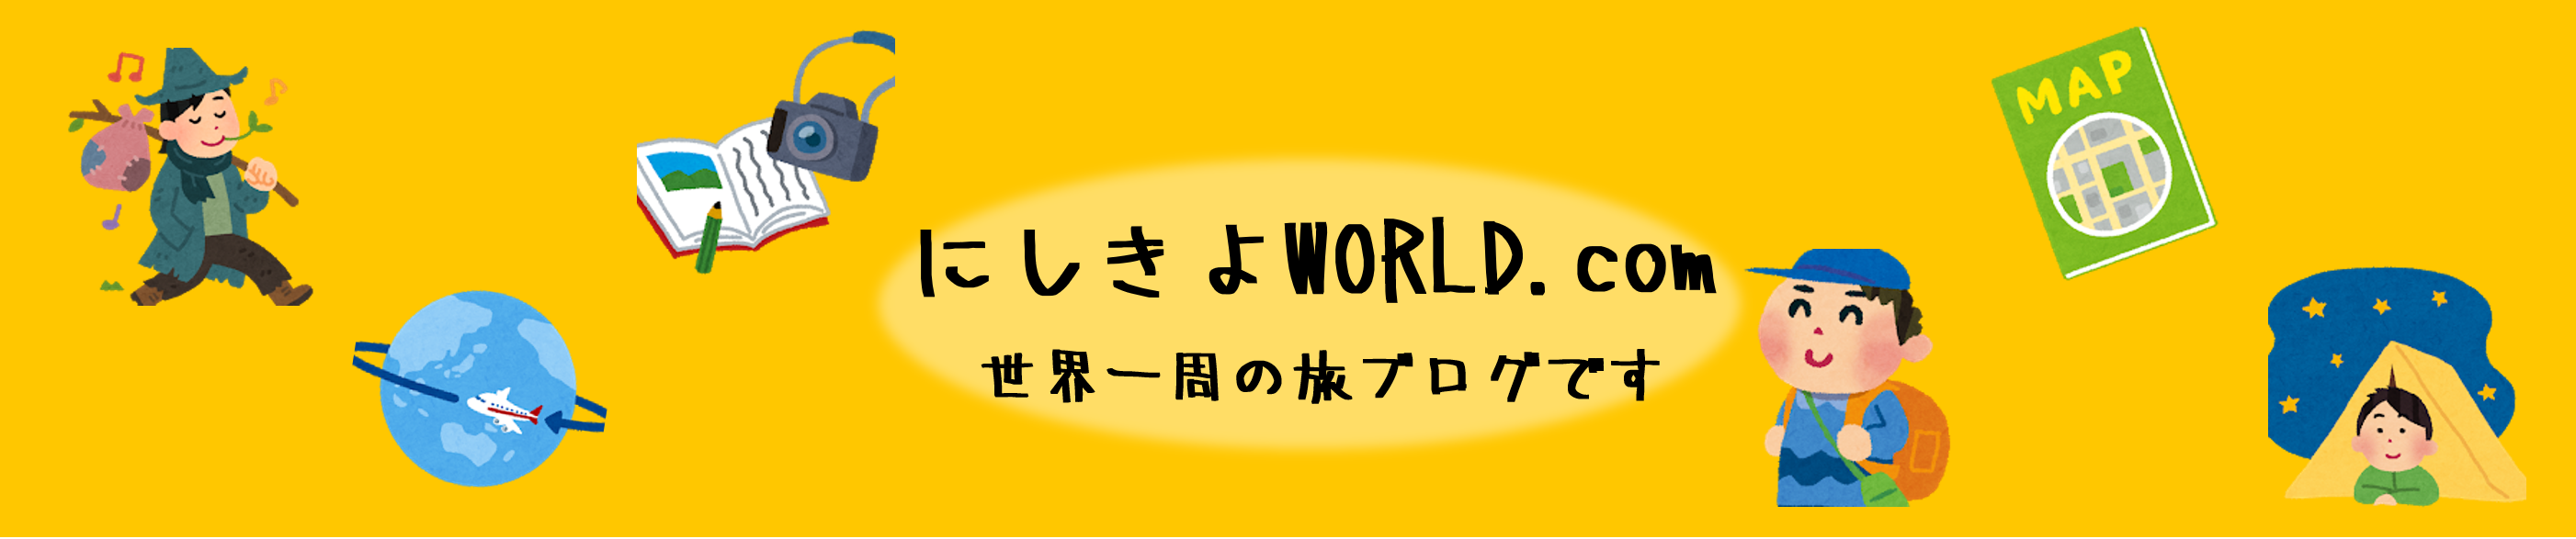 にしきよWORLD.com